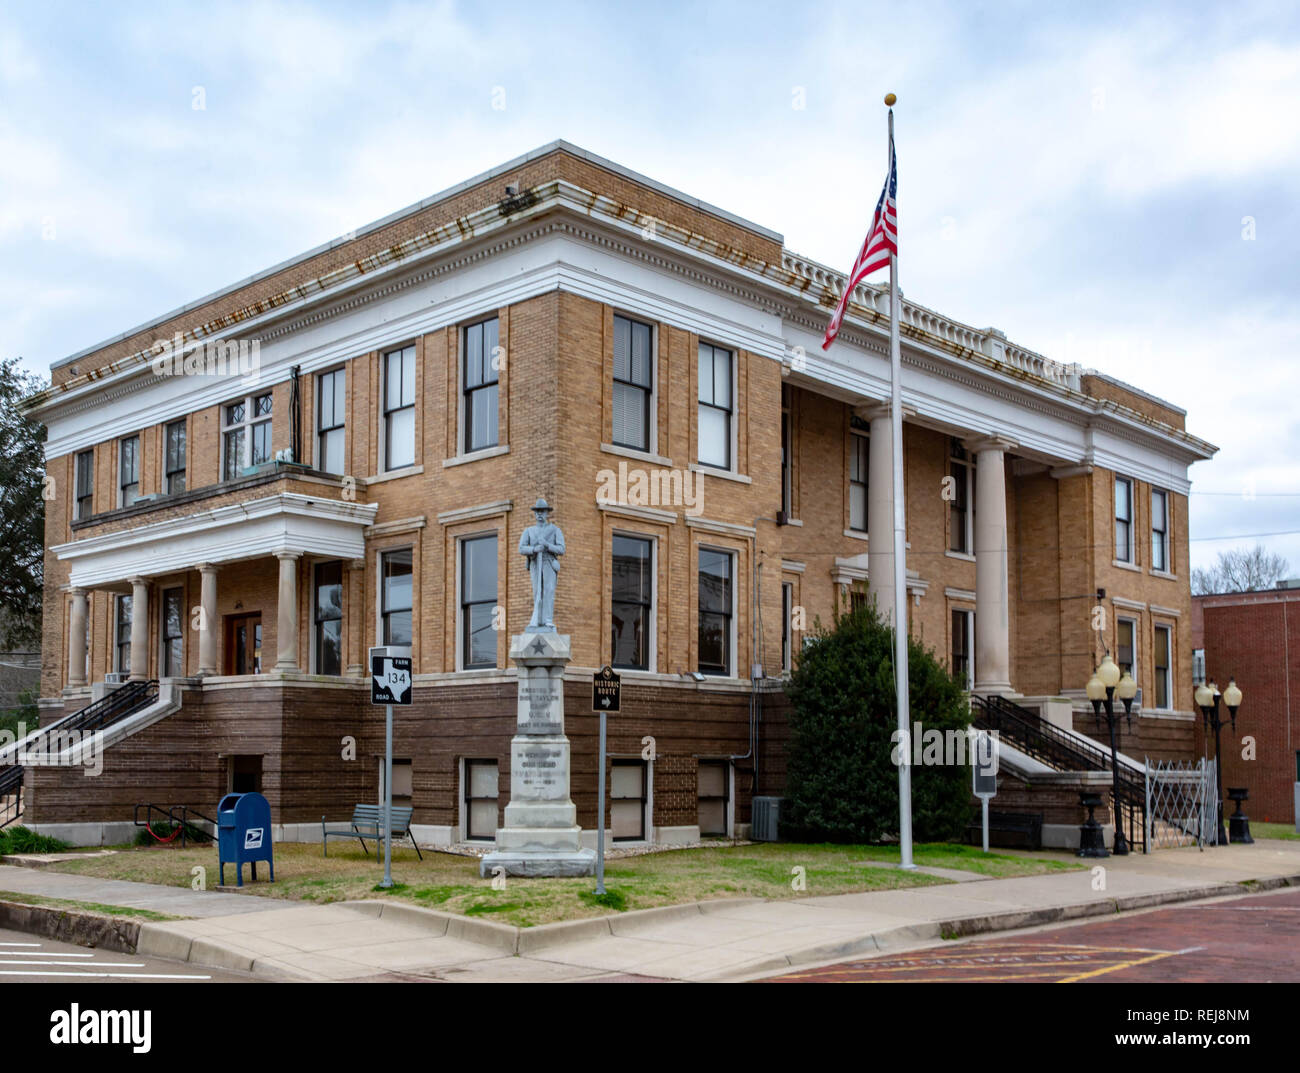 1912 Marion County courthouse in Jefferson, Texas. Dieses Gericht in Texas als historische Sehenswürdigkeit aufgelistet. Stockfoto